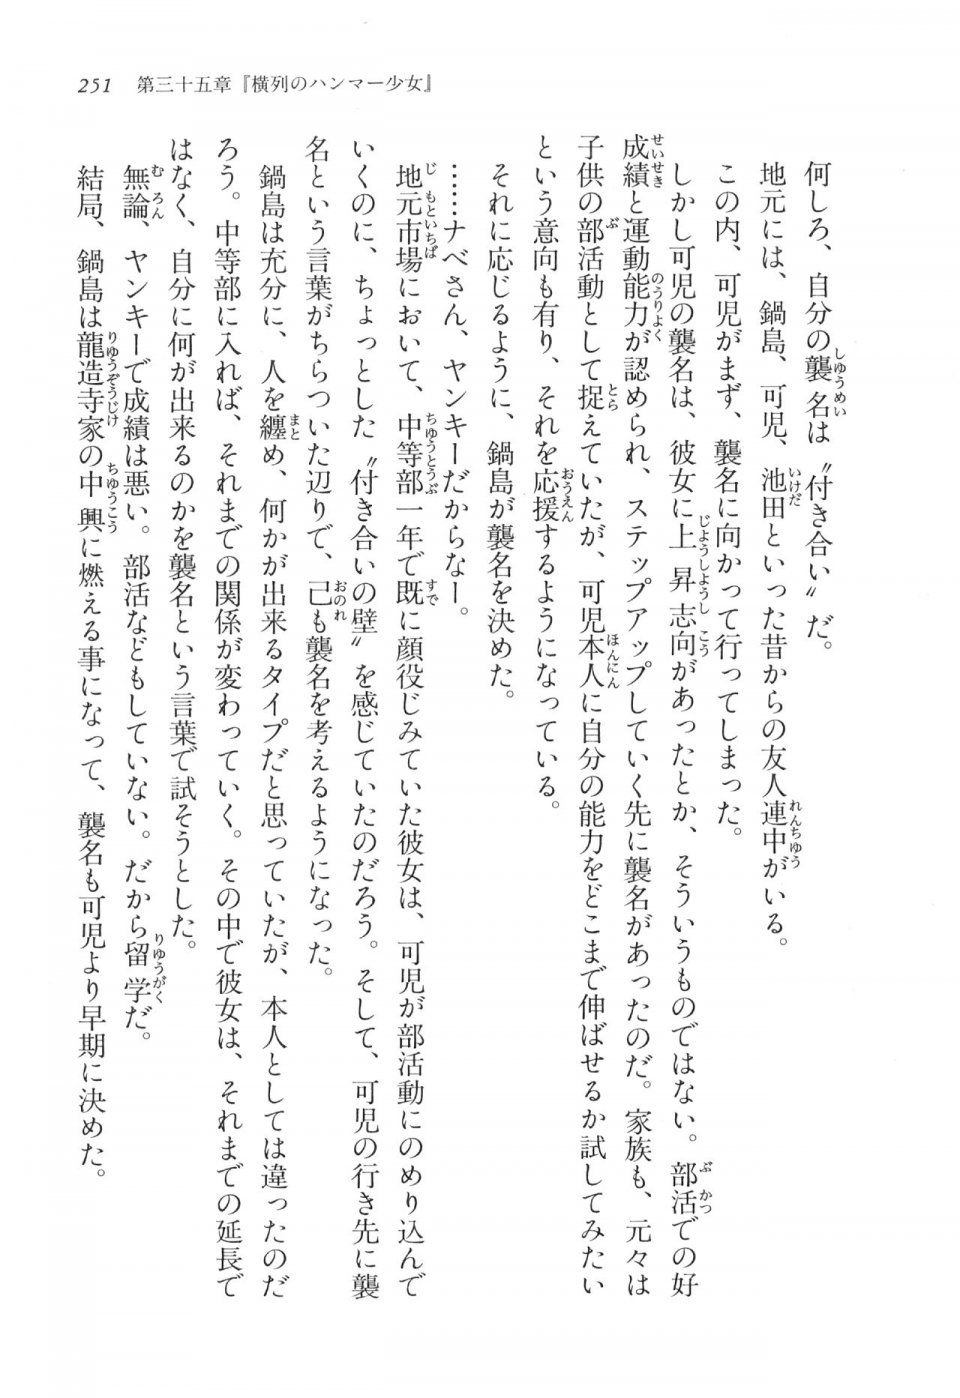 Kyoukai Senjou no Horizon LN Vol 17(7B) - Photo #251